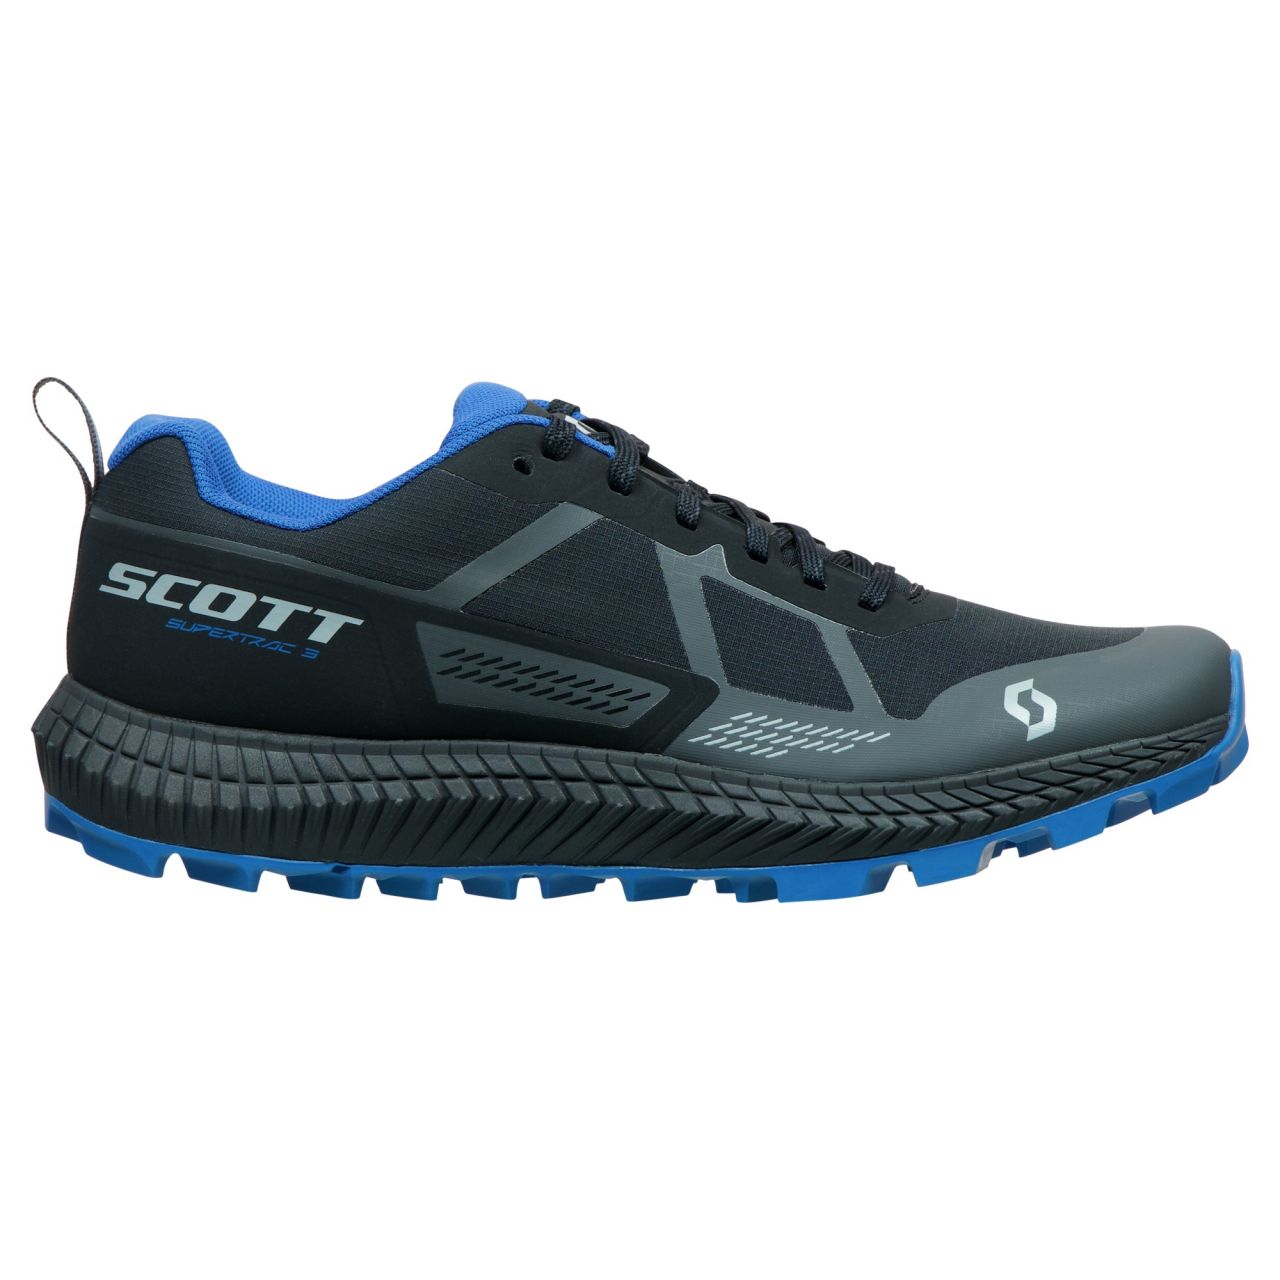 SCOTT SUPERTRAC 3 BLACK ET STORM BLUE Chaussures de Trail